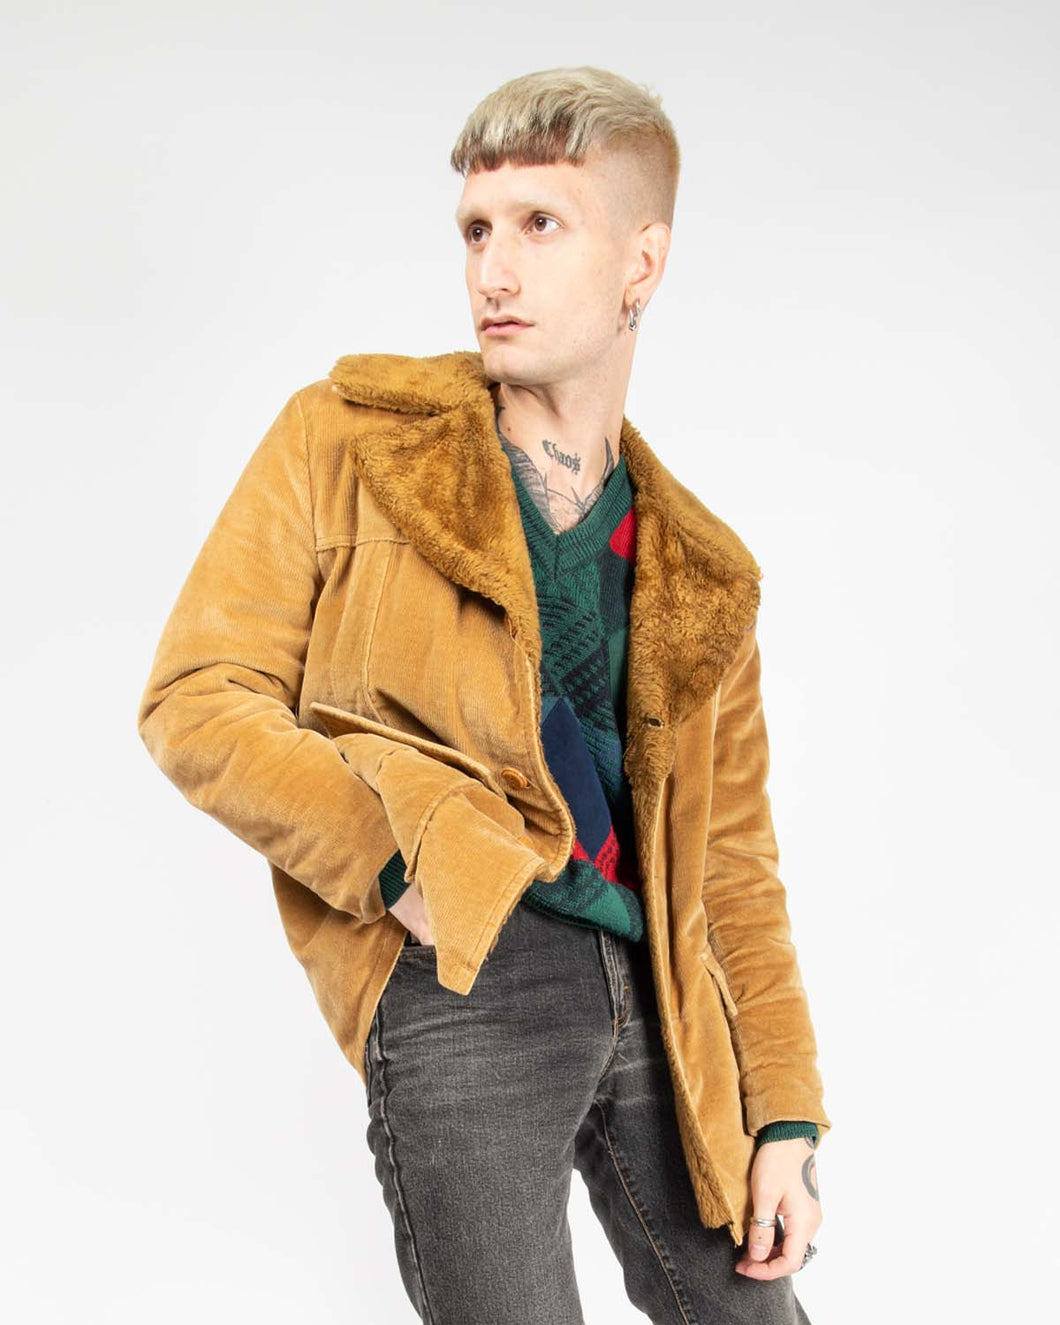 Van Heusen brown corduroy jacket